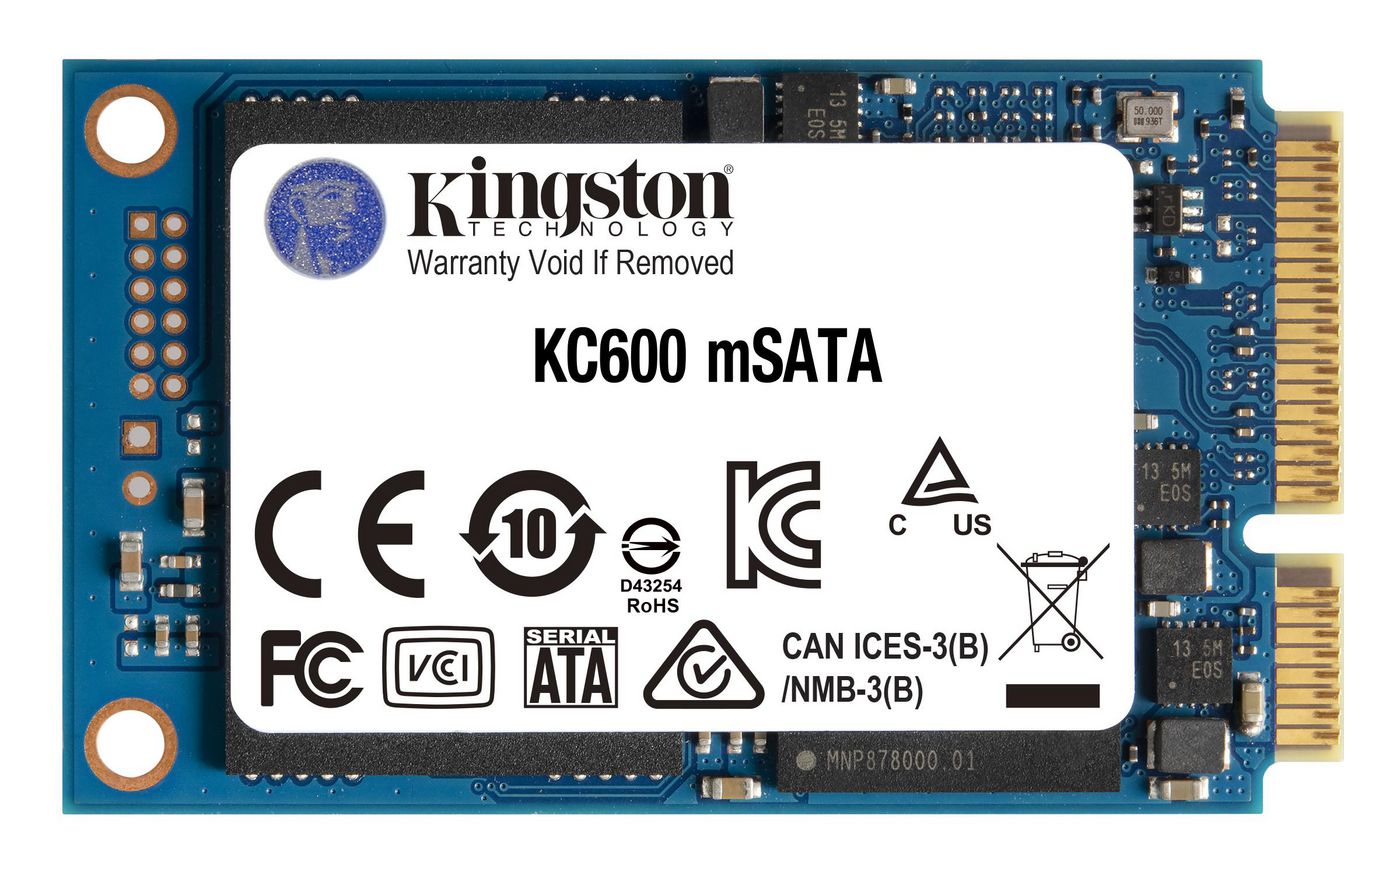 Kingston SKC600MS256G W126144172 Technology KC600 mSATA 256 GB 